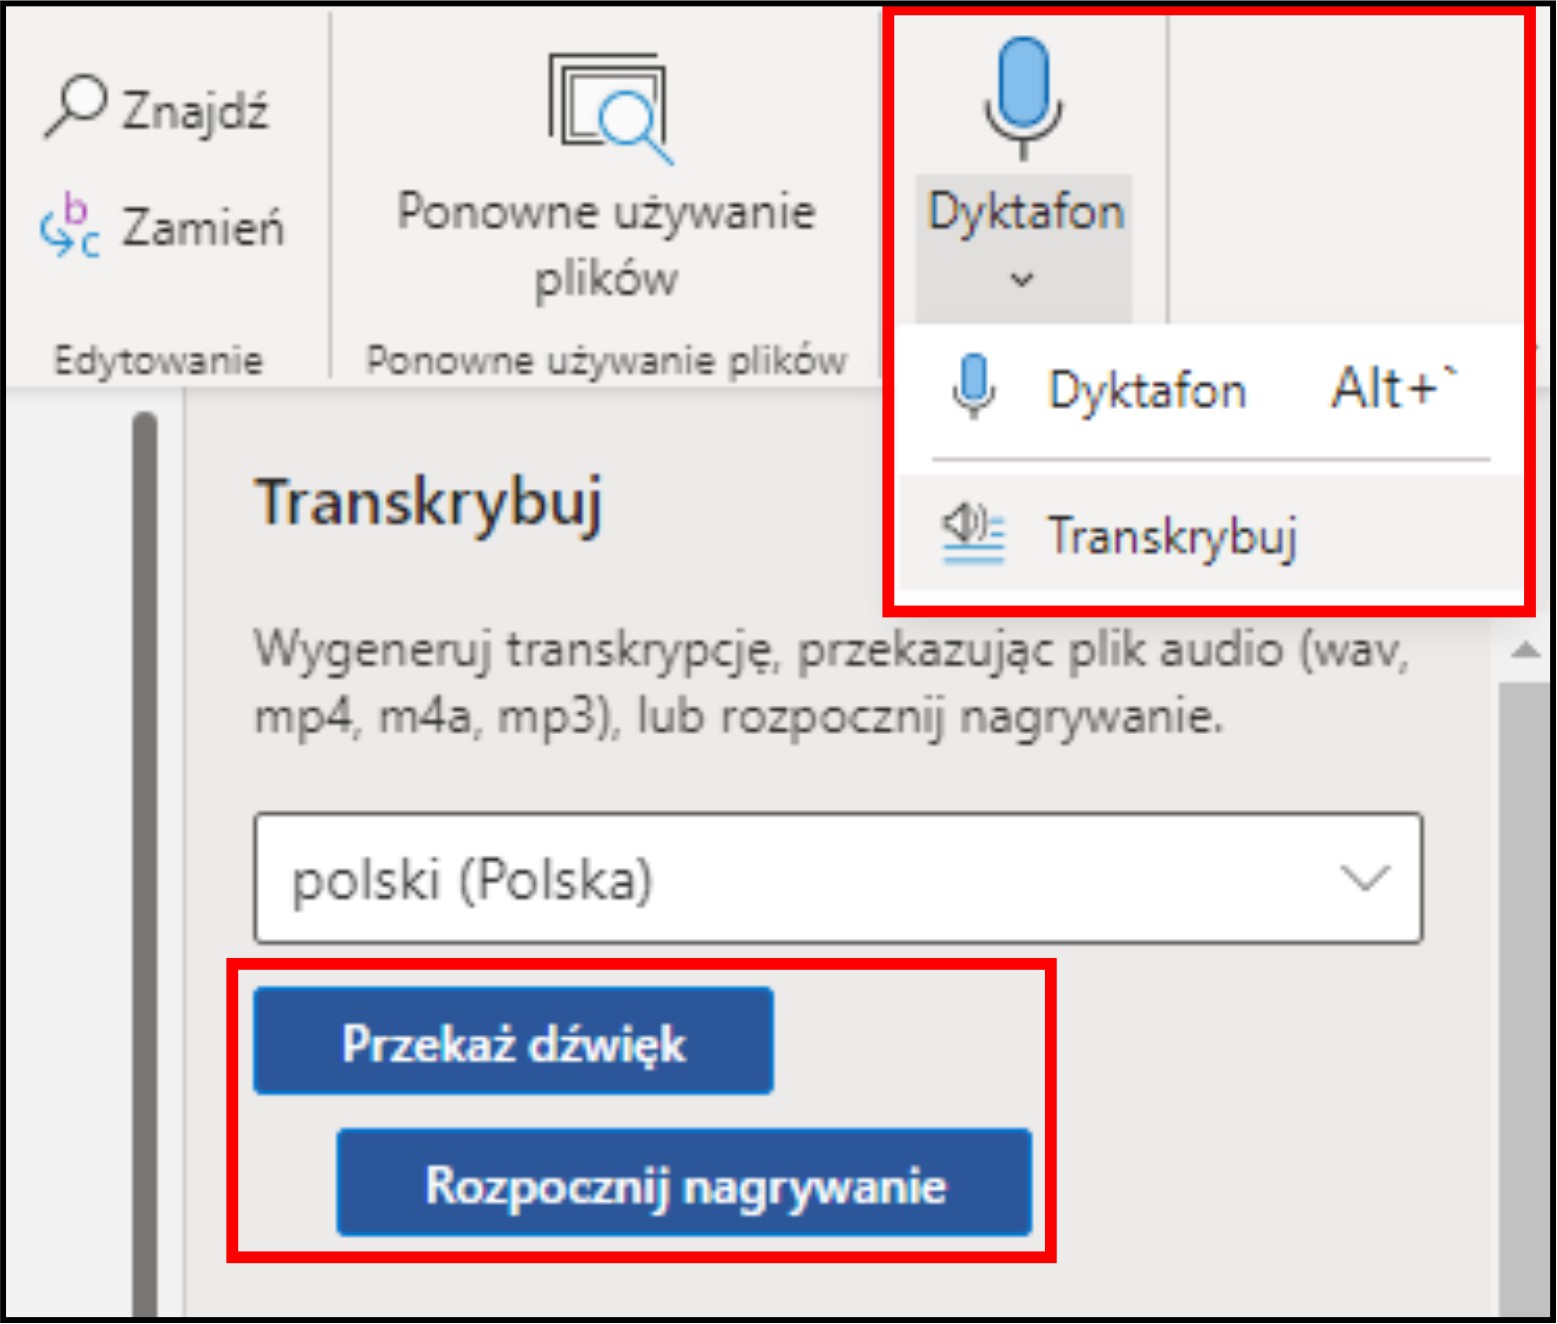 Zrzut ekranu. Aplikacja Office365 udostępnia narzędzie Dyktafon oraz Transkrybuj umożliwiające rozpoznawanie mowy do tekstu podczas dyktowania lub z nagrania.